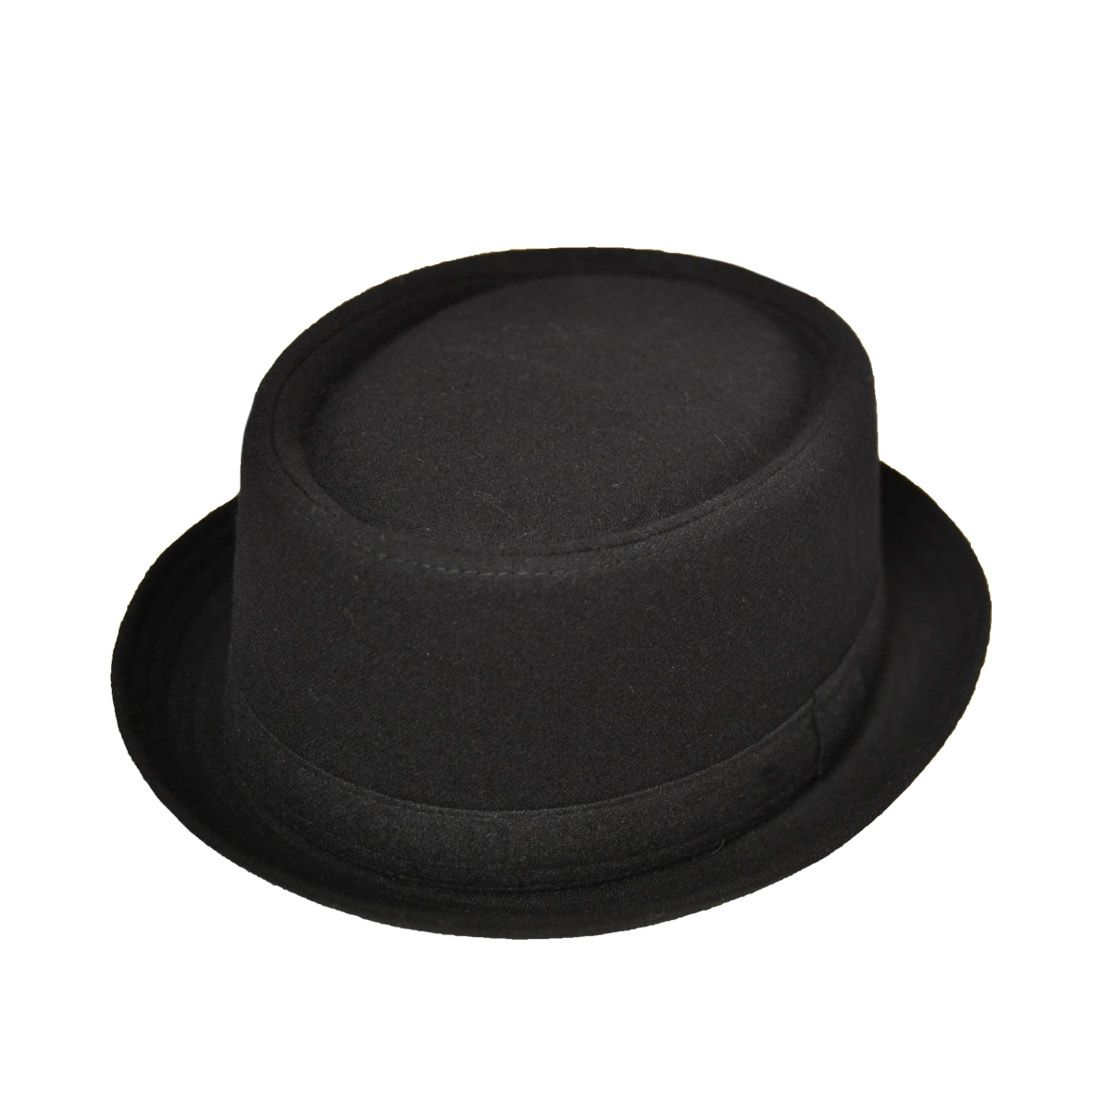 Maz Wool Pork Pie Hat, Black